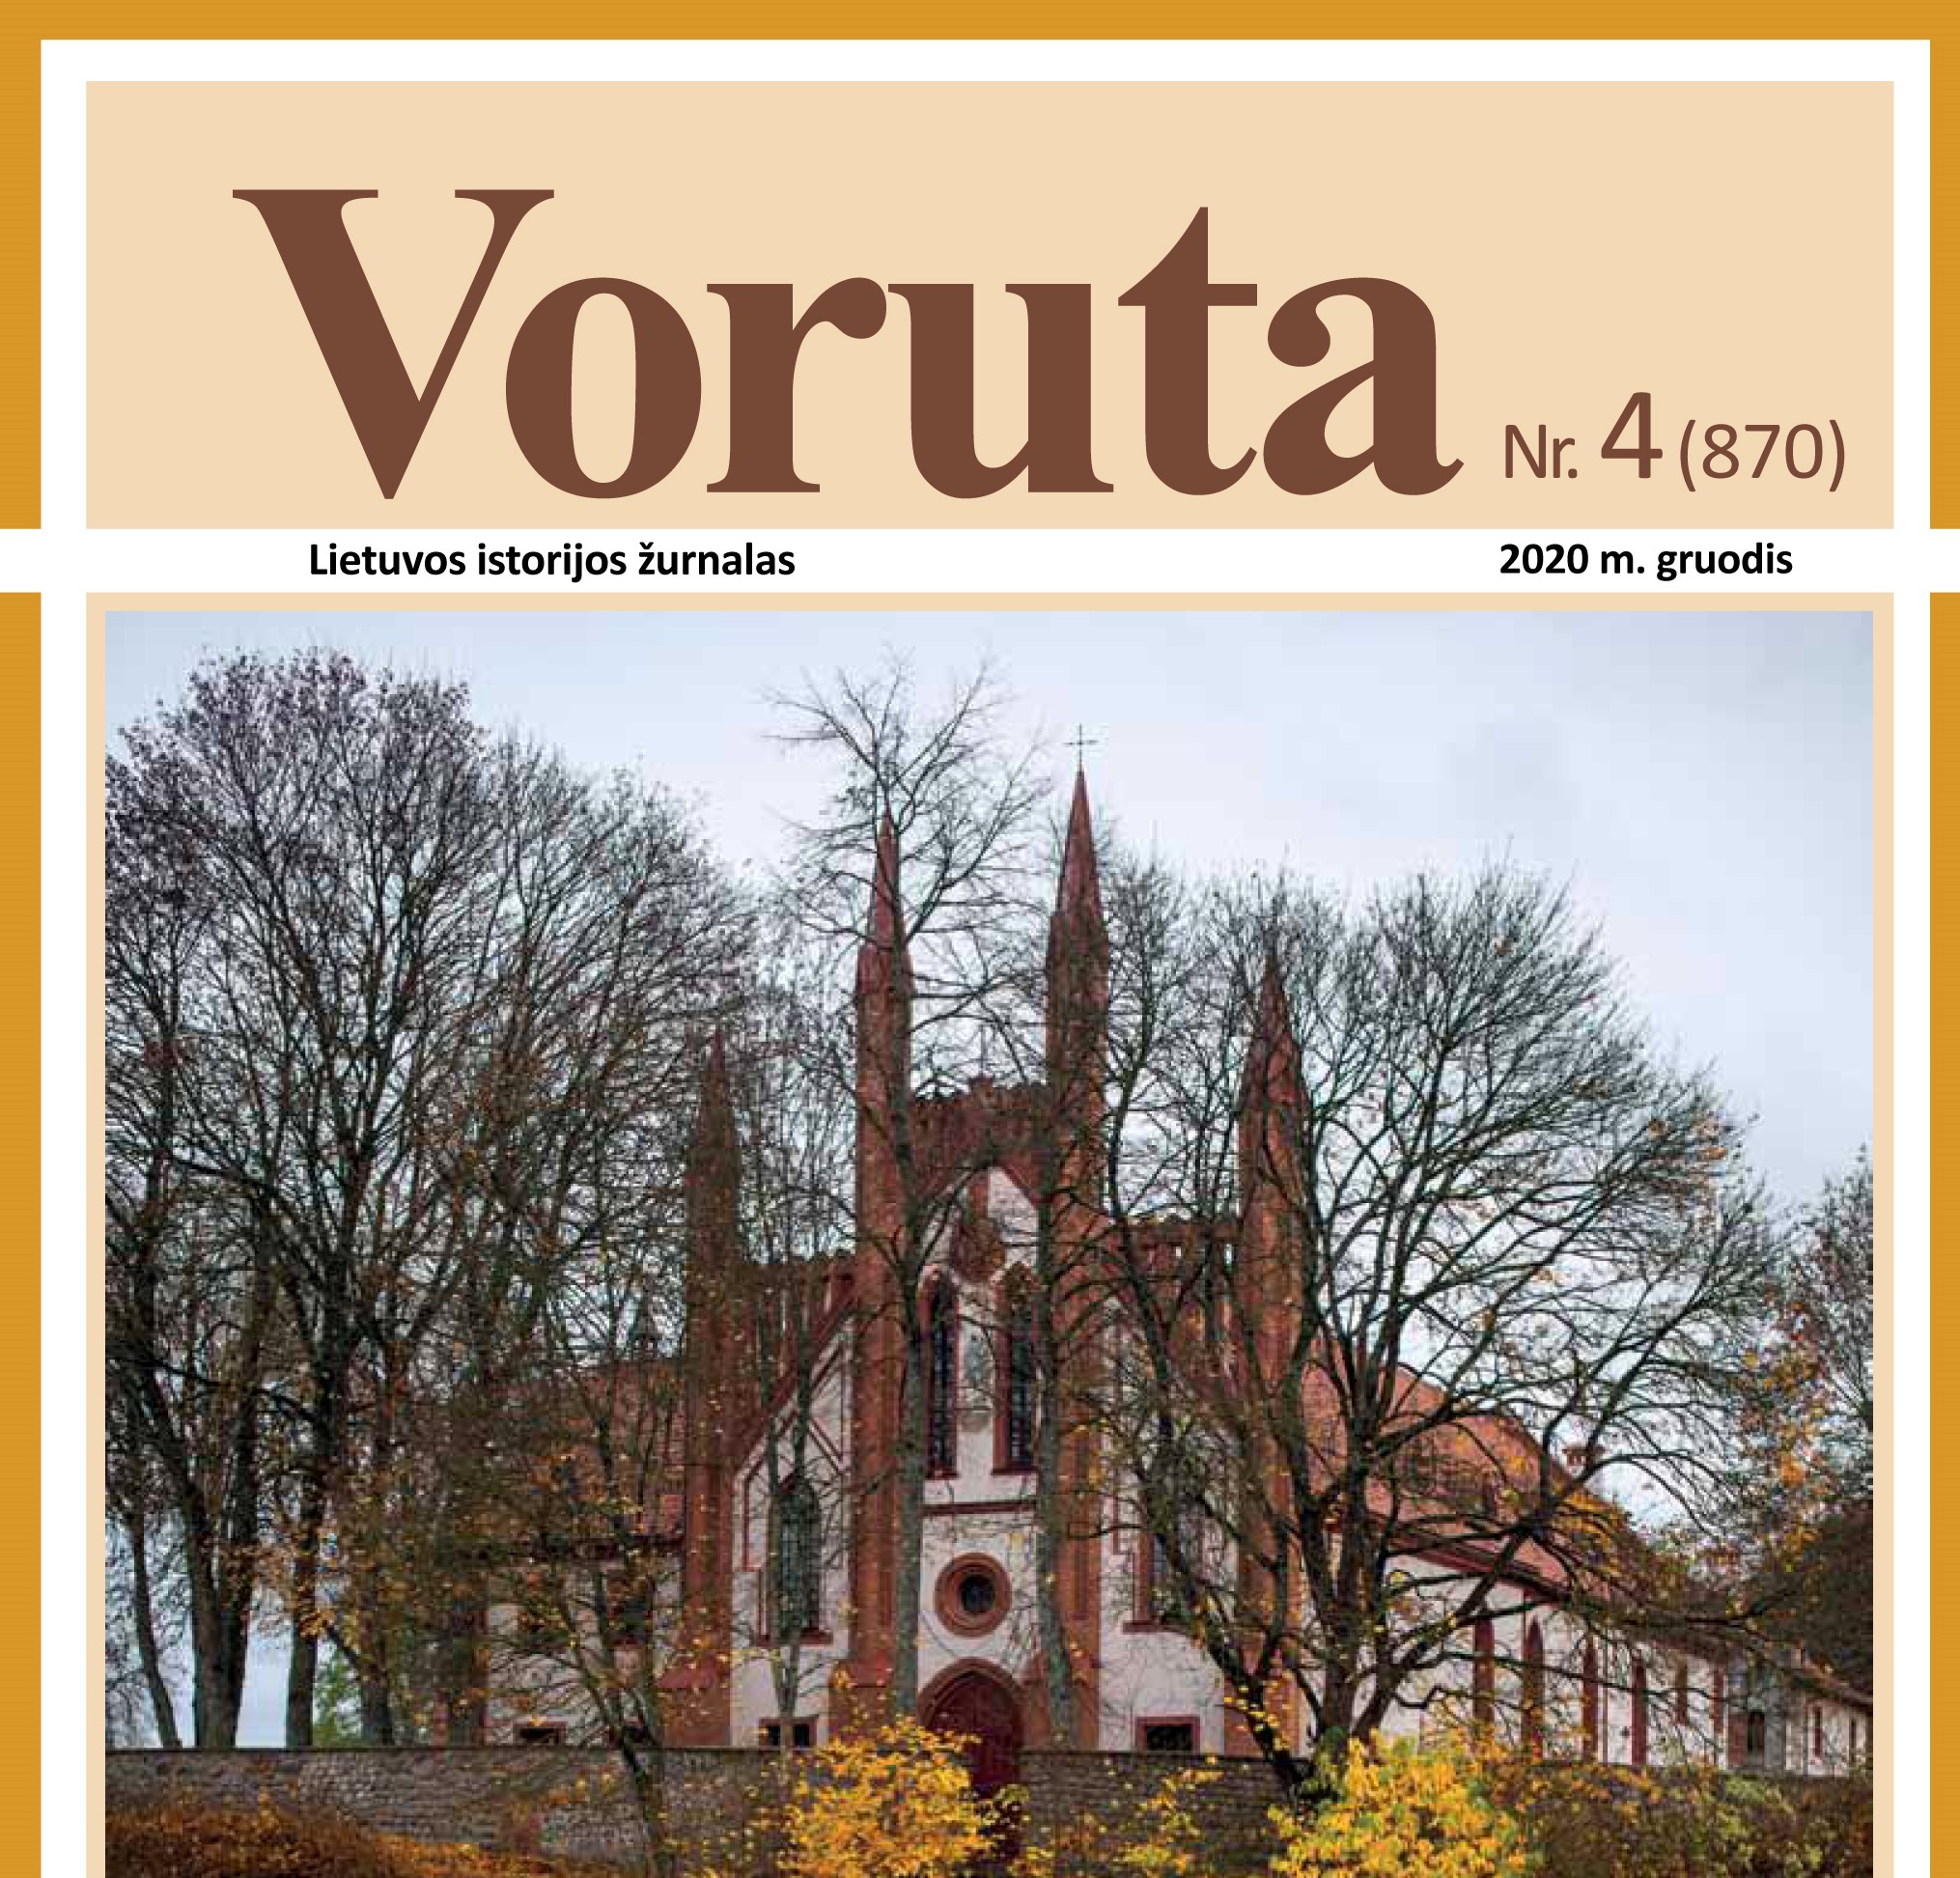 Jau galima užsiprenumeruoti ir Lietuvos istorijos žurnalo „Voruta“ elektroninę versiją – žurnalą PDF formatu. Ji atsiunčiama į užsakovo nurodytą elektroninio pašto dėžutę